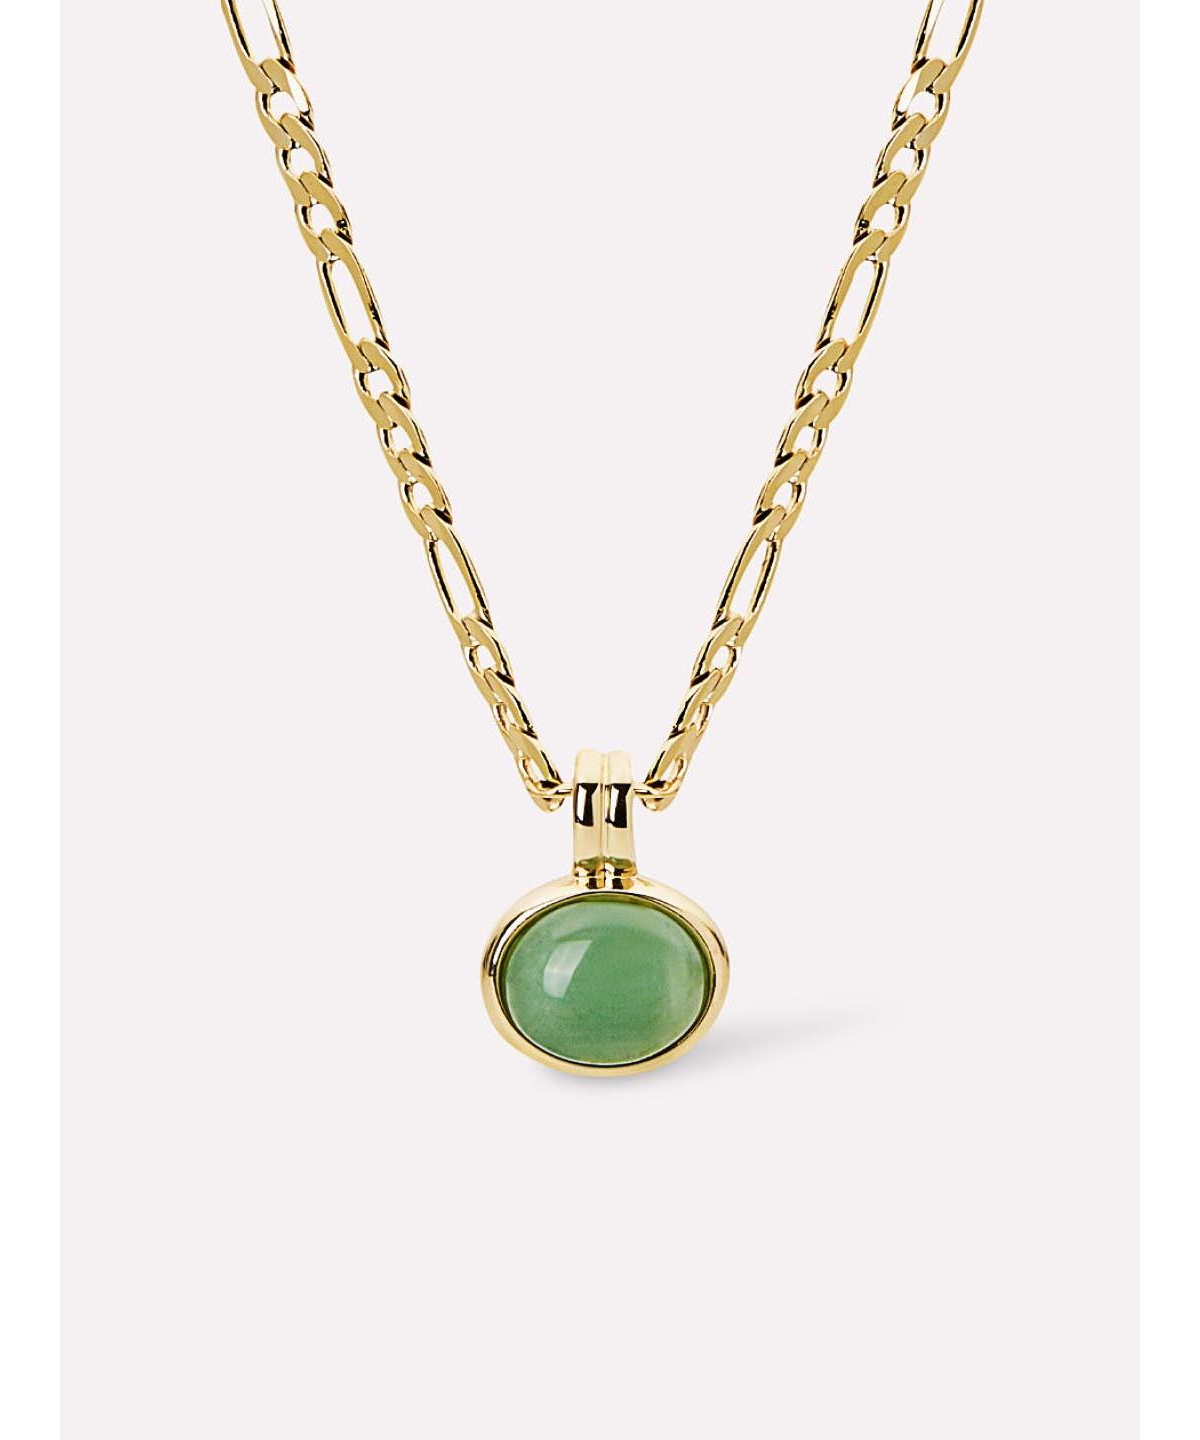 - Gemstone Necklace - Meesh - Gold, gold, aventurine, green